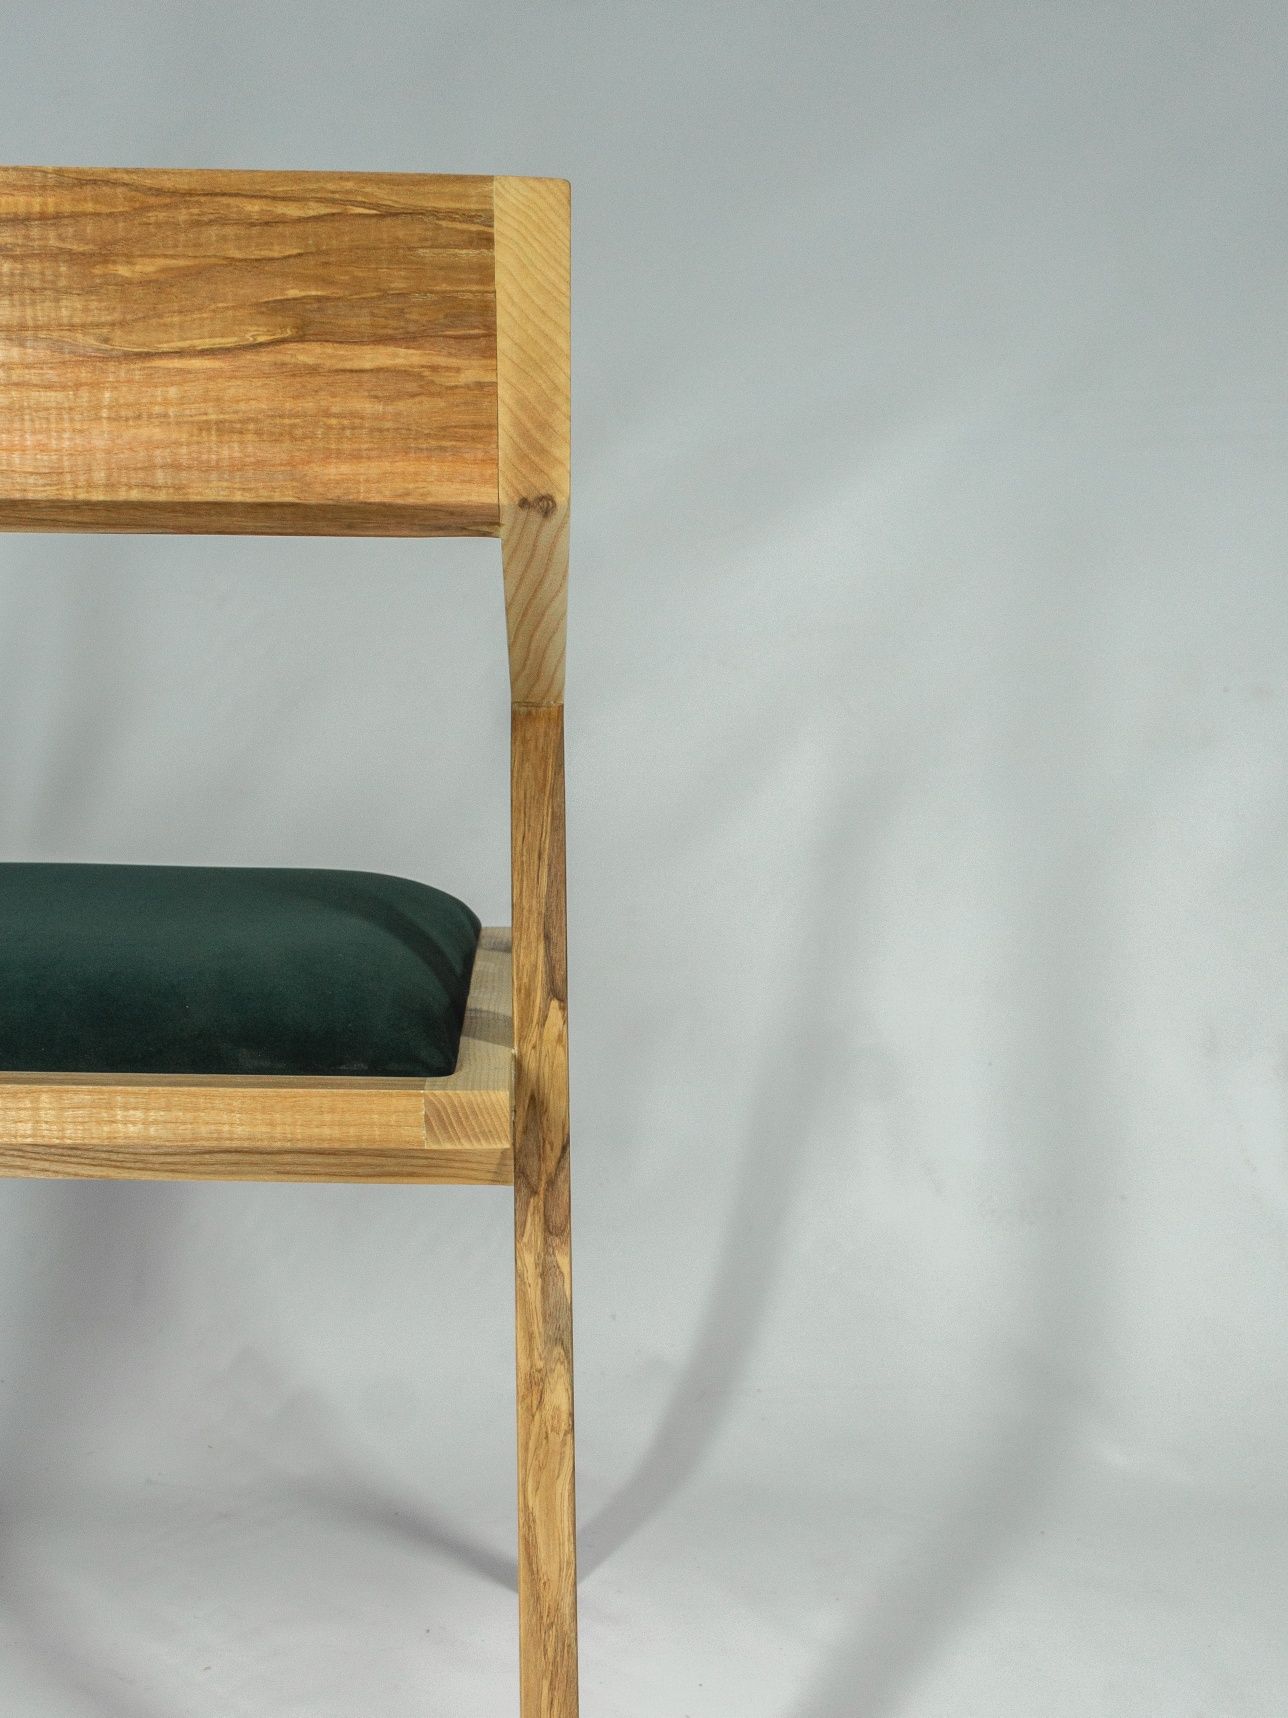 Стілець - крісло для кухні дерев'яне м'яке з ясена або дуба